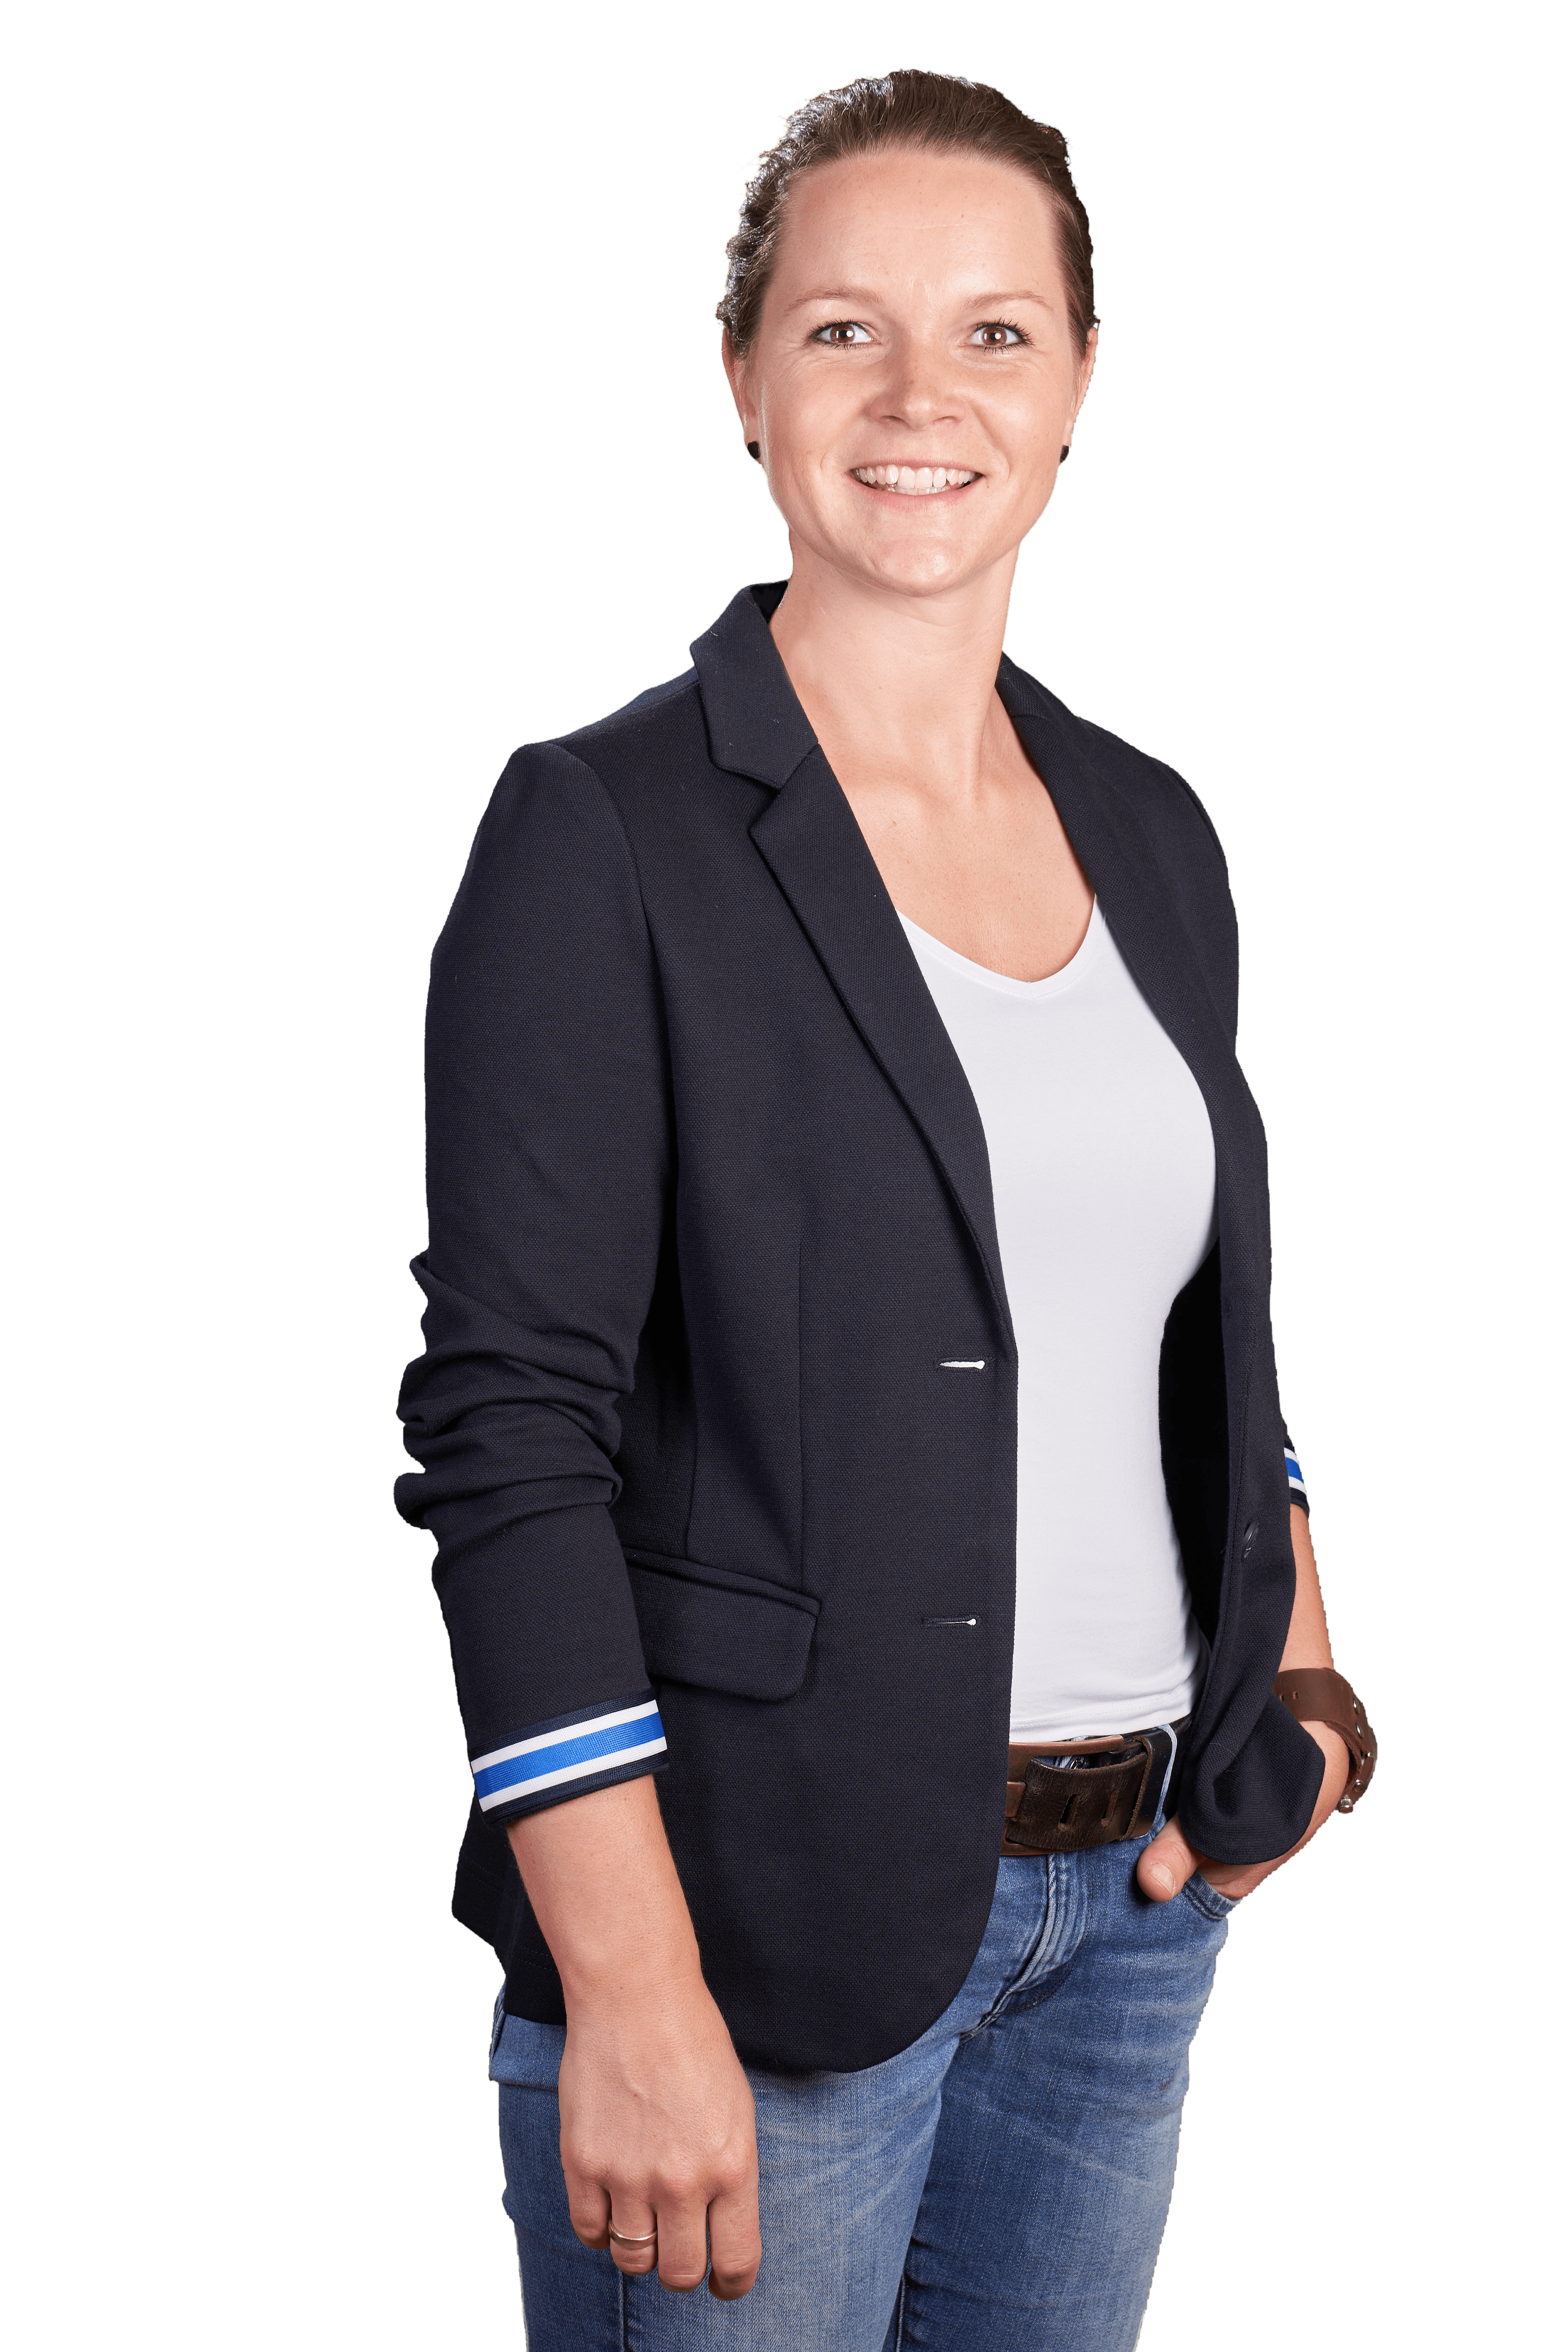 Andrea Fortmeier. Mitarbeiterin bei Gesing Tierzucht, einem Unternehmen für Jungsauenvermarktung und Weiterentwicklung deren Genetik.